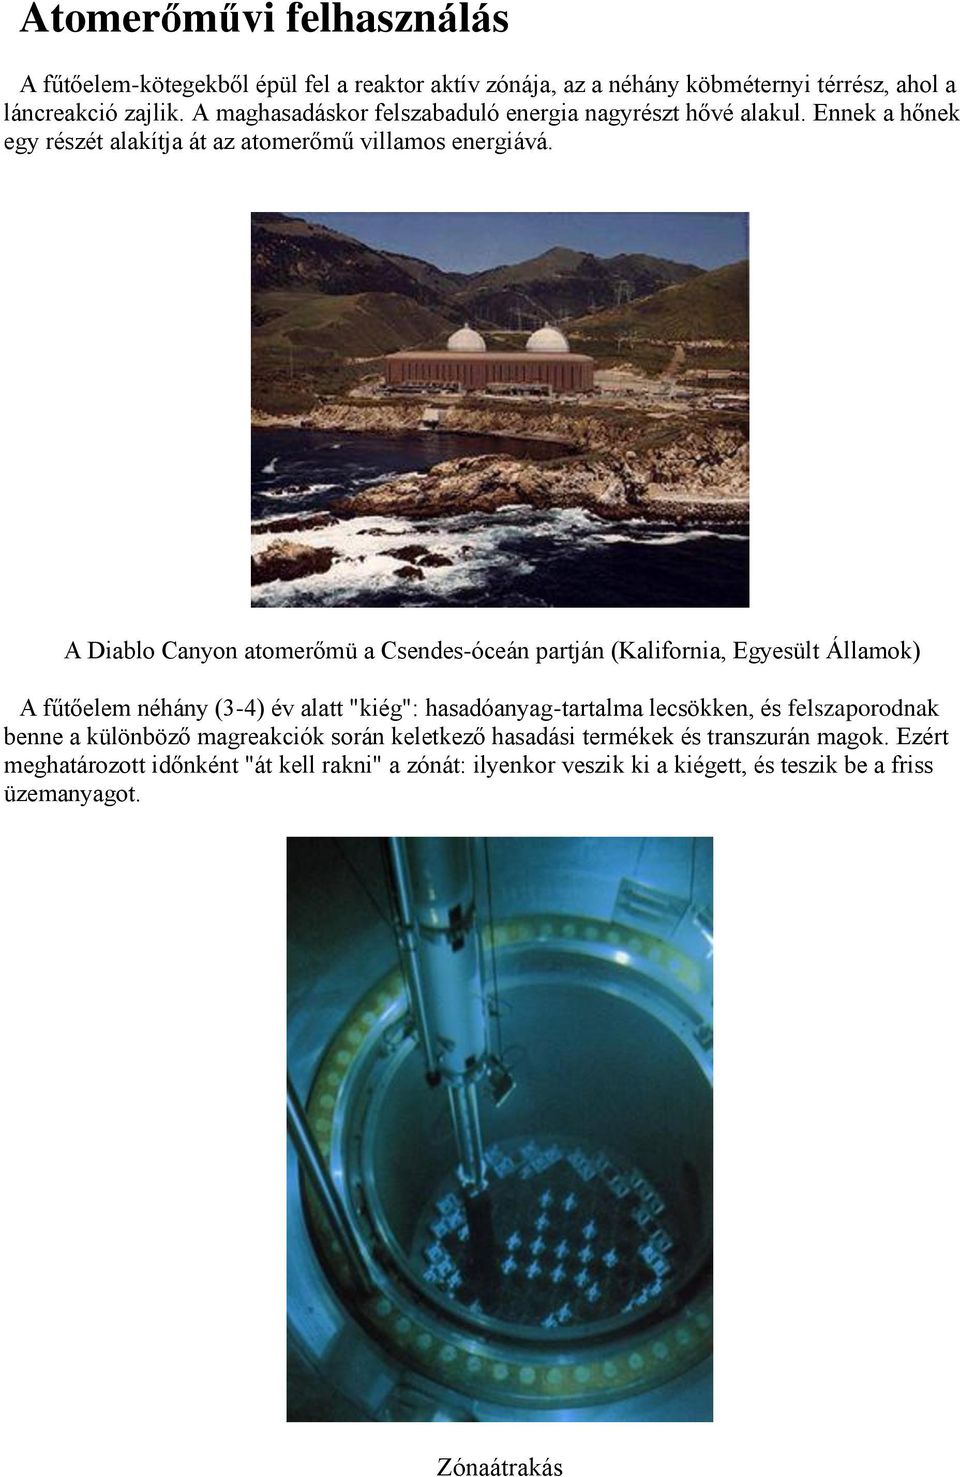 A Diablo Canyon atomerőmü a Csendes-óceán partján (Kalifornia, Egyesült Államok) A fűtőelem néhány (3-4) év alatt "kiég": hasadóanyag-tartalma lecsökken, és